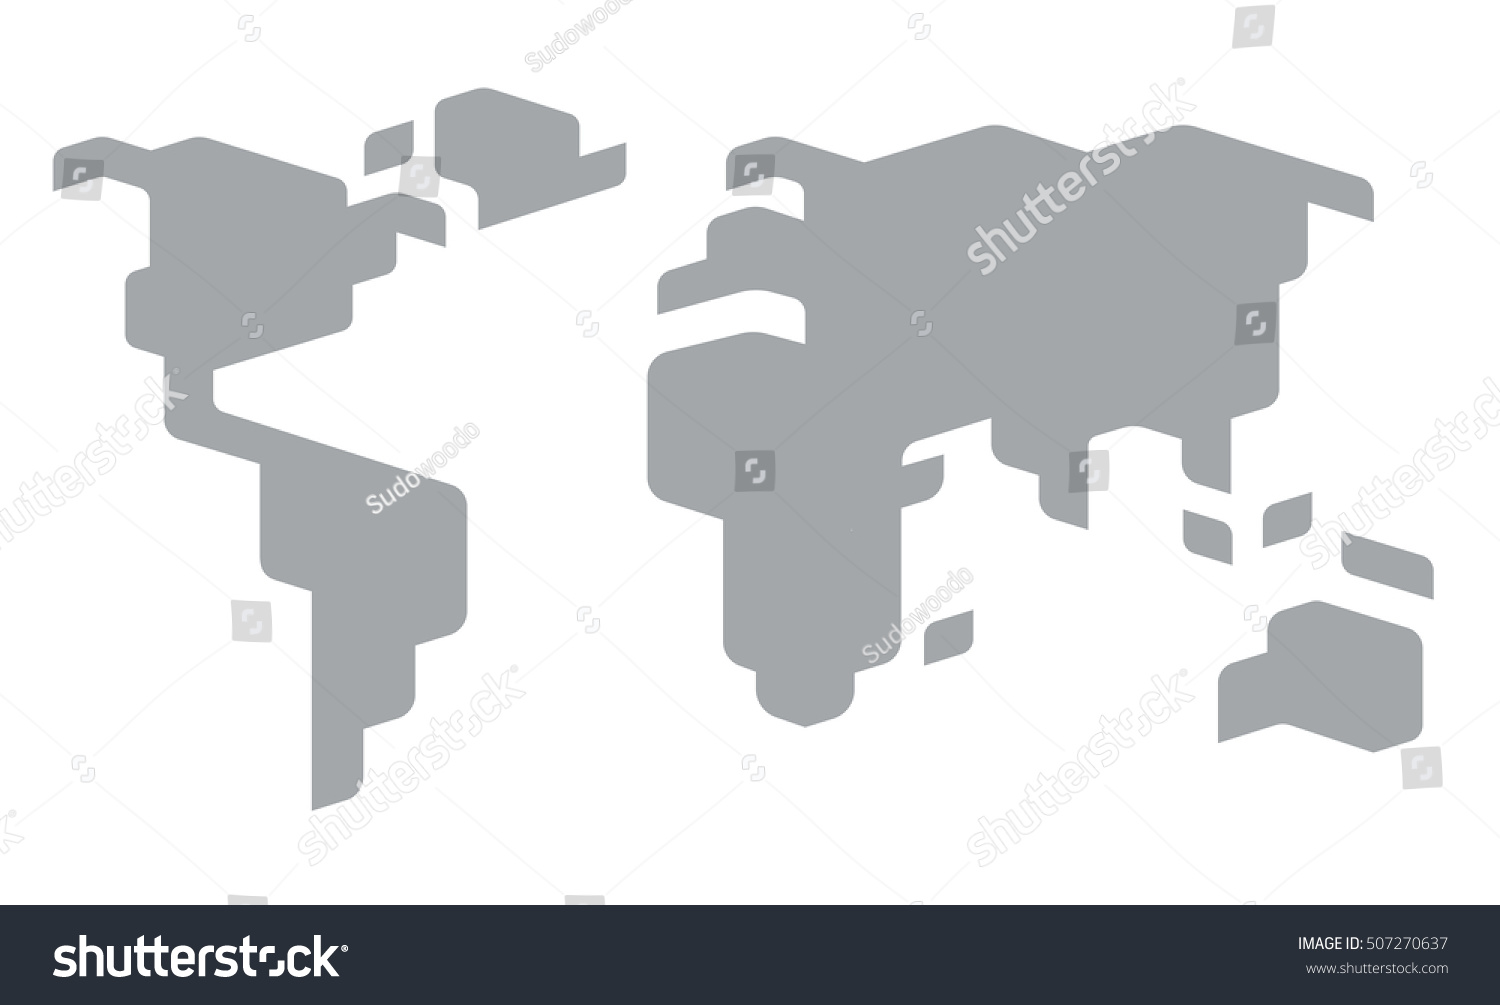 Resultado de imagen de world map simplified